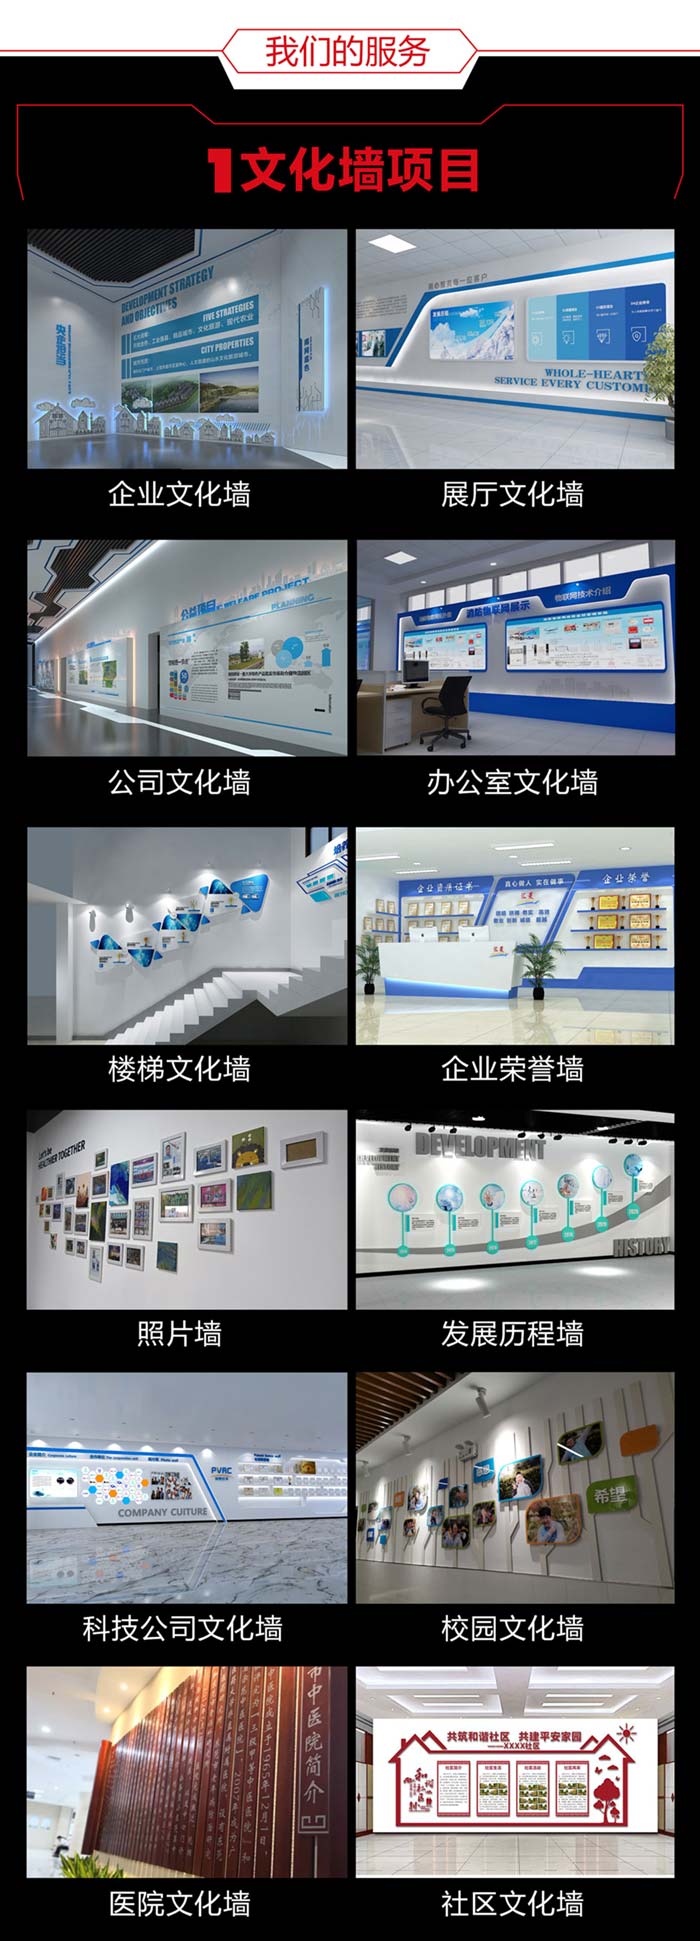 印江印江印江文化墙设计详情页700切片图_04.jpg